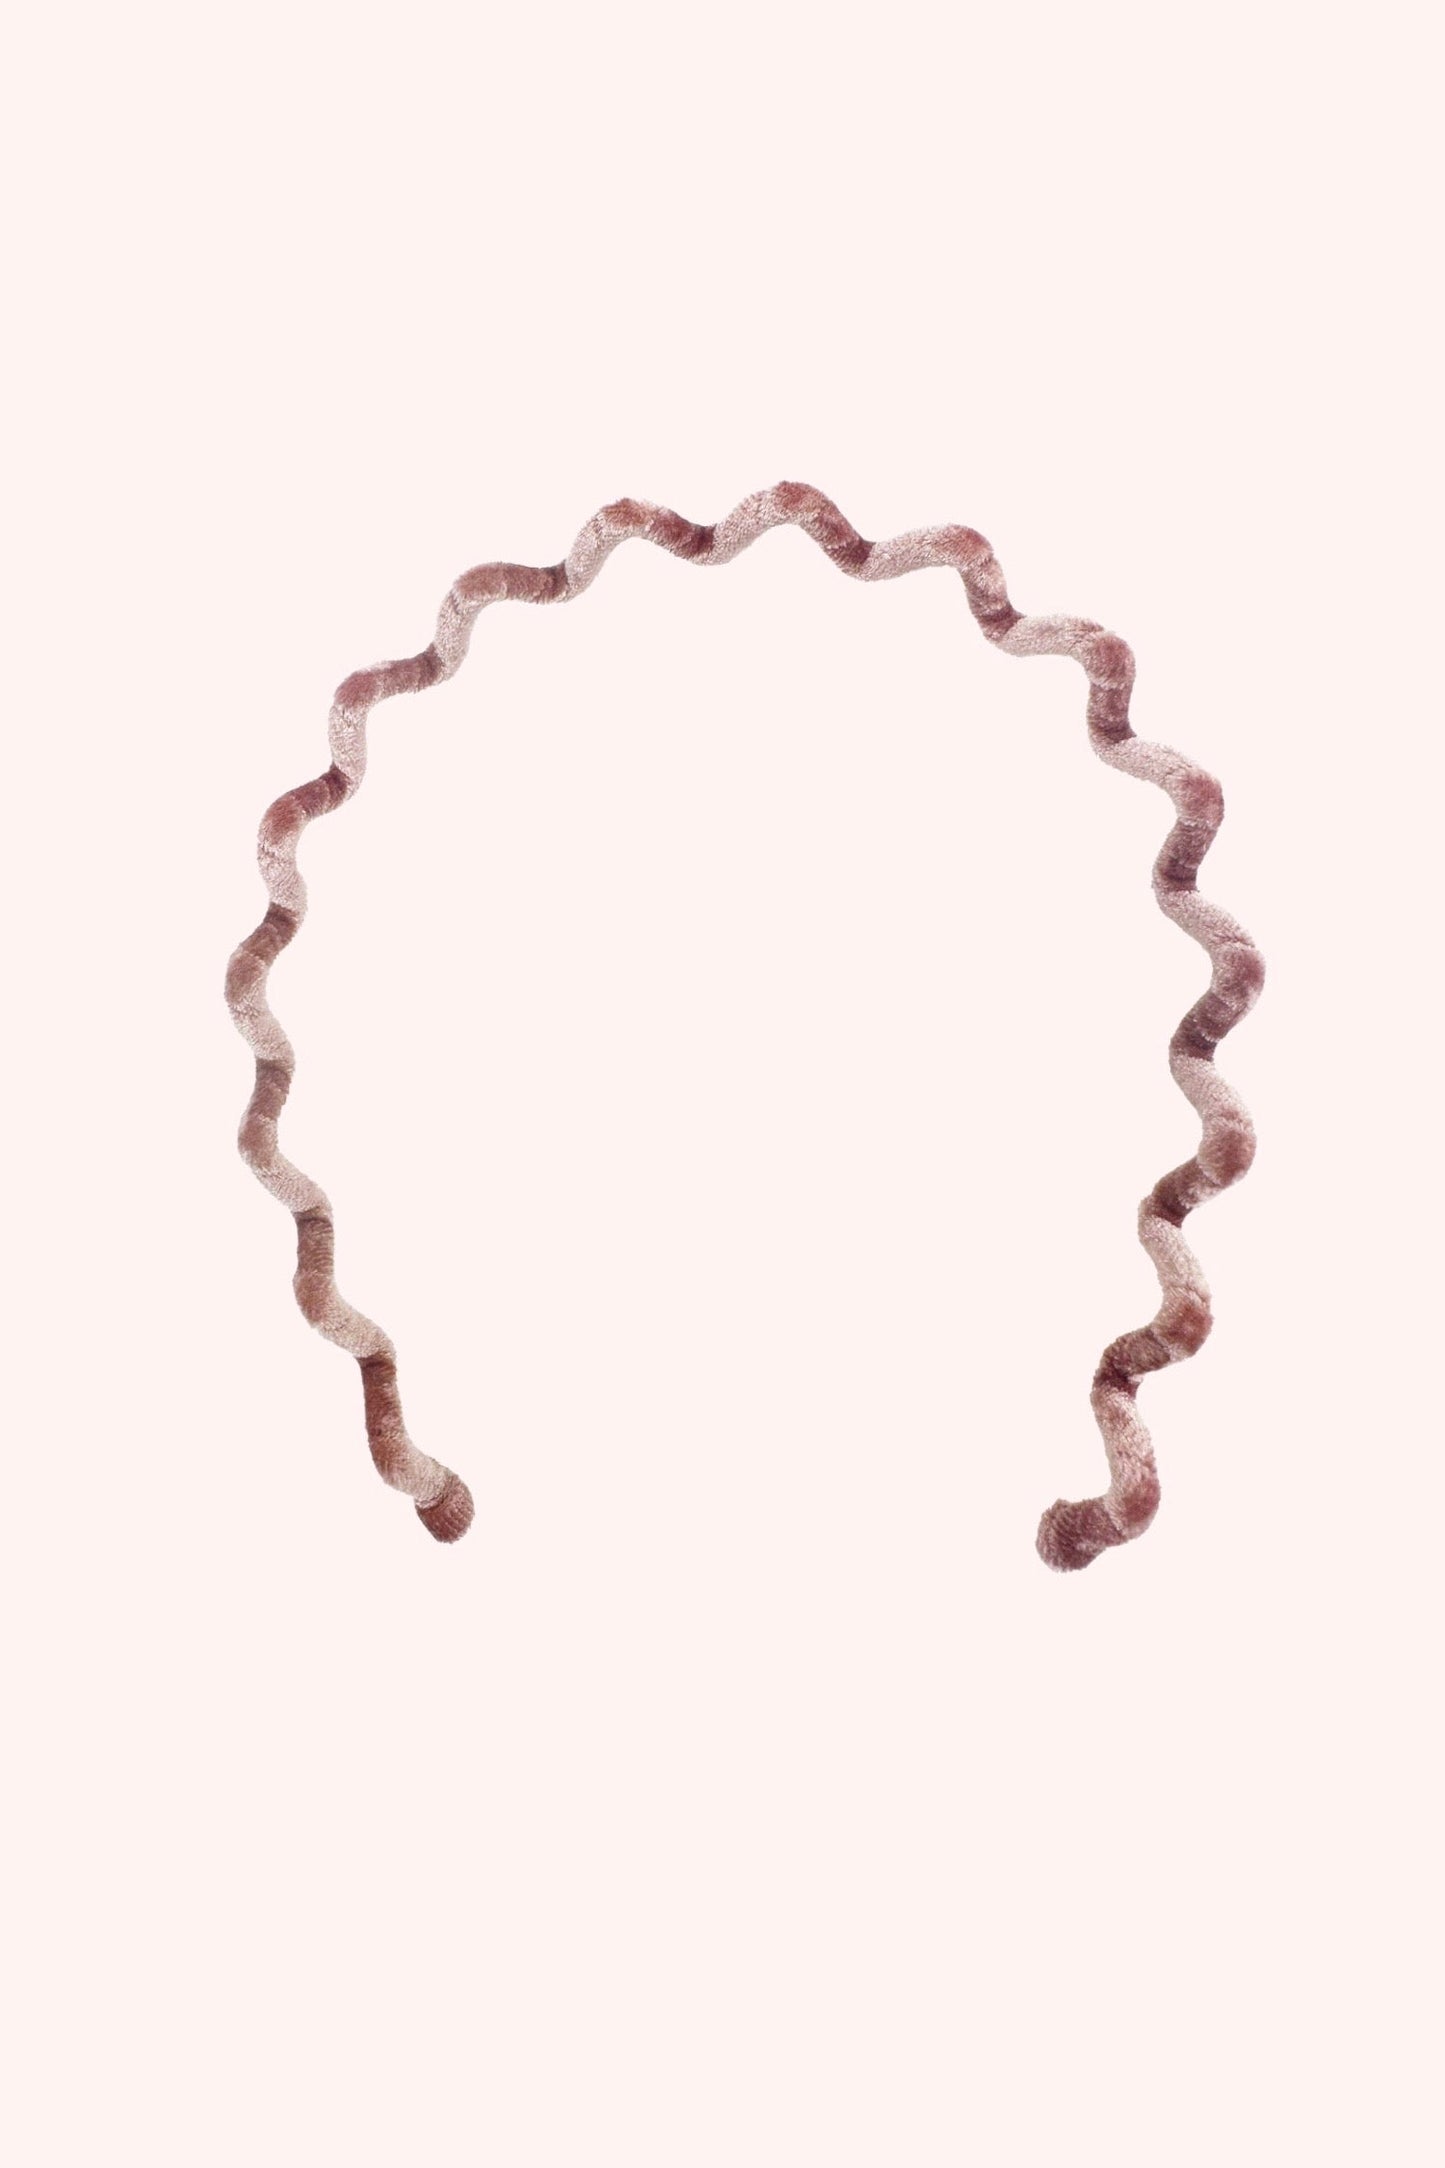 Wavy Velvet Headband Pink Polyester, in omega shape